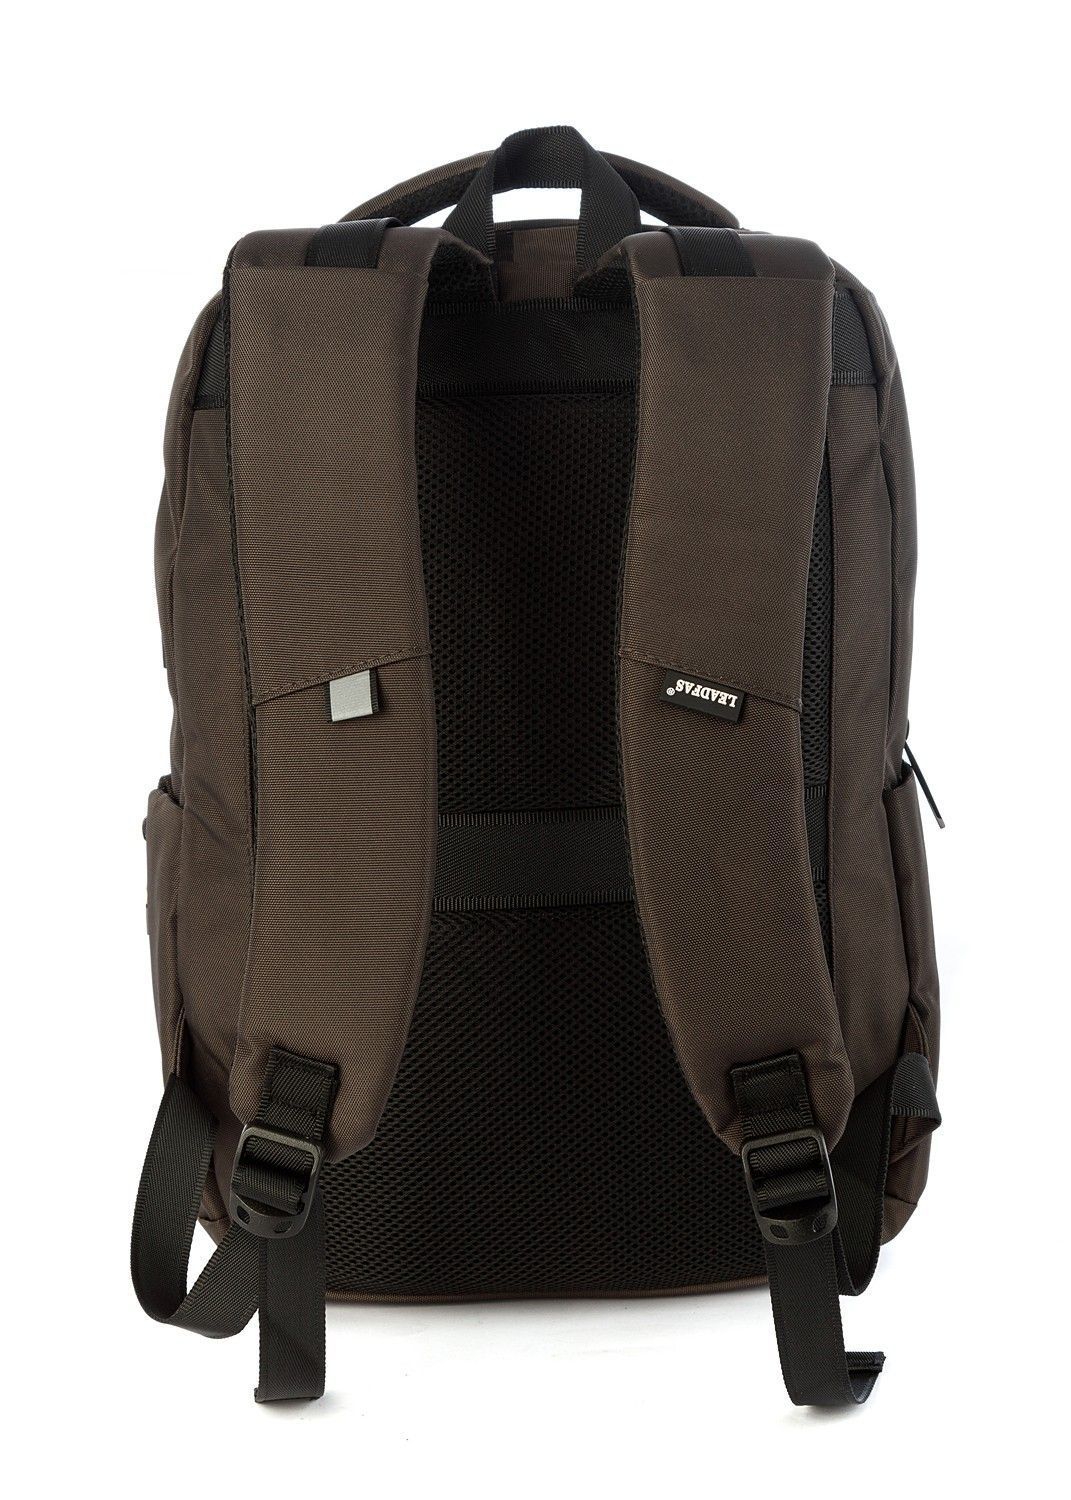 Рюкзак мужской городской, темно-серый, для ноутбука, с USB портом, объем 17л